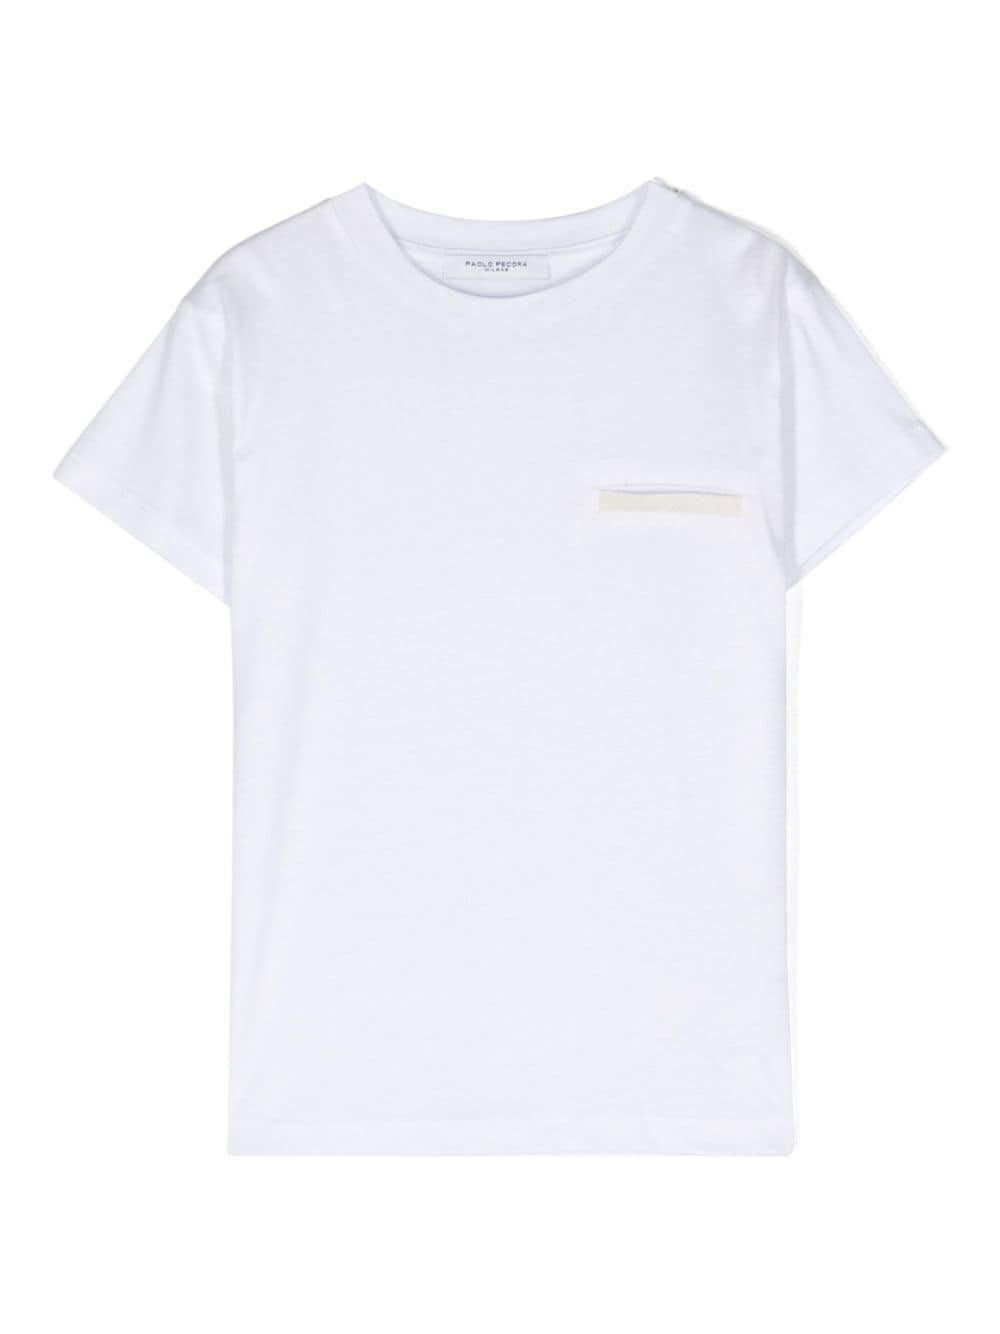 Paolo Pecora Kids' Crew-neck Cotton T-shirt In White